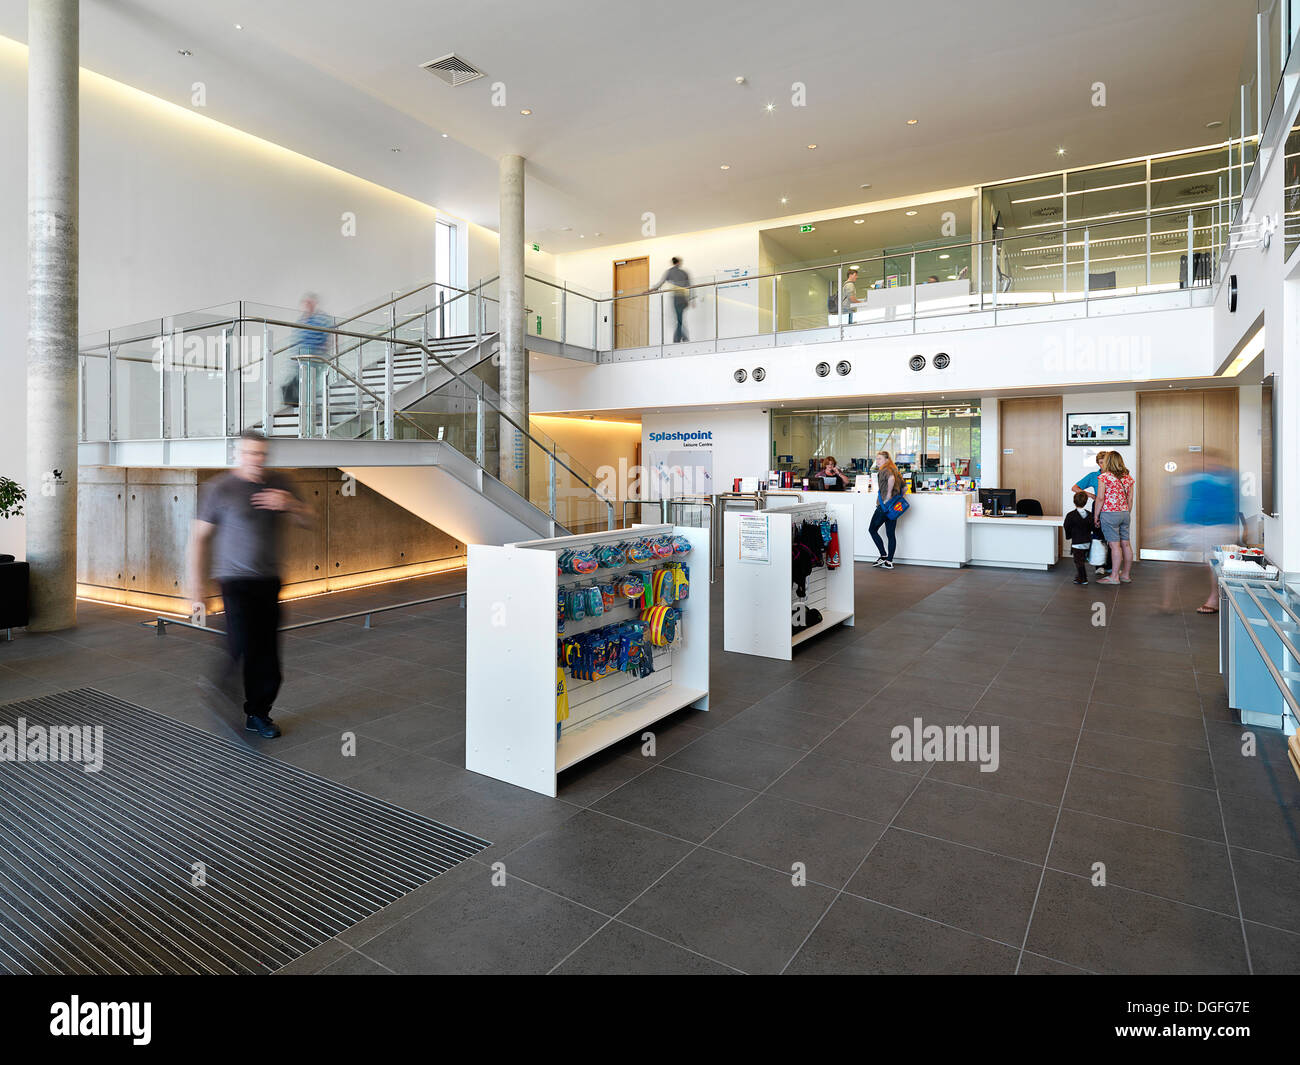 Splashpoint Leisure Centre, Worthing, United Kingdom. Architect: Wilkinson Eyre Architects, 2013. Public entrance hall. Stock Photo